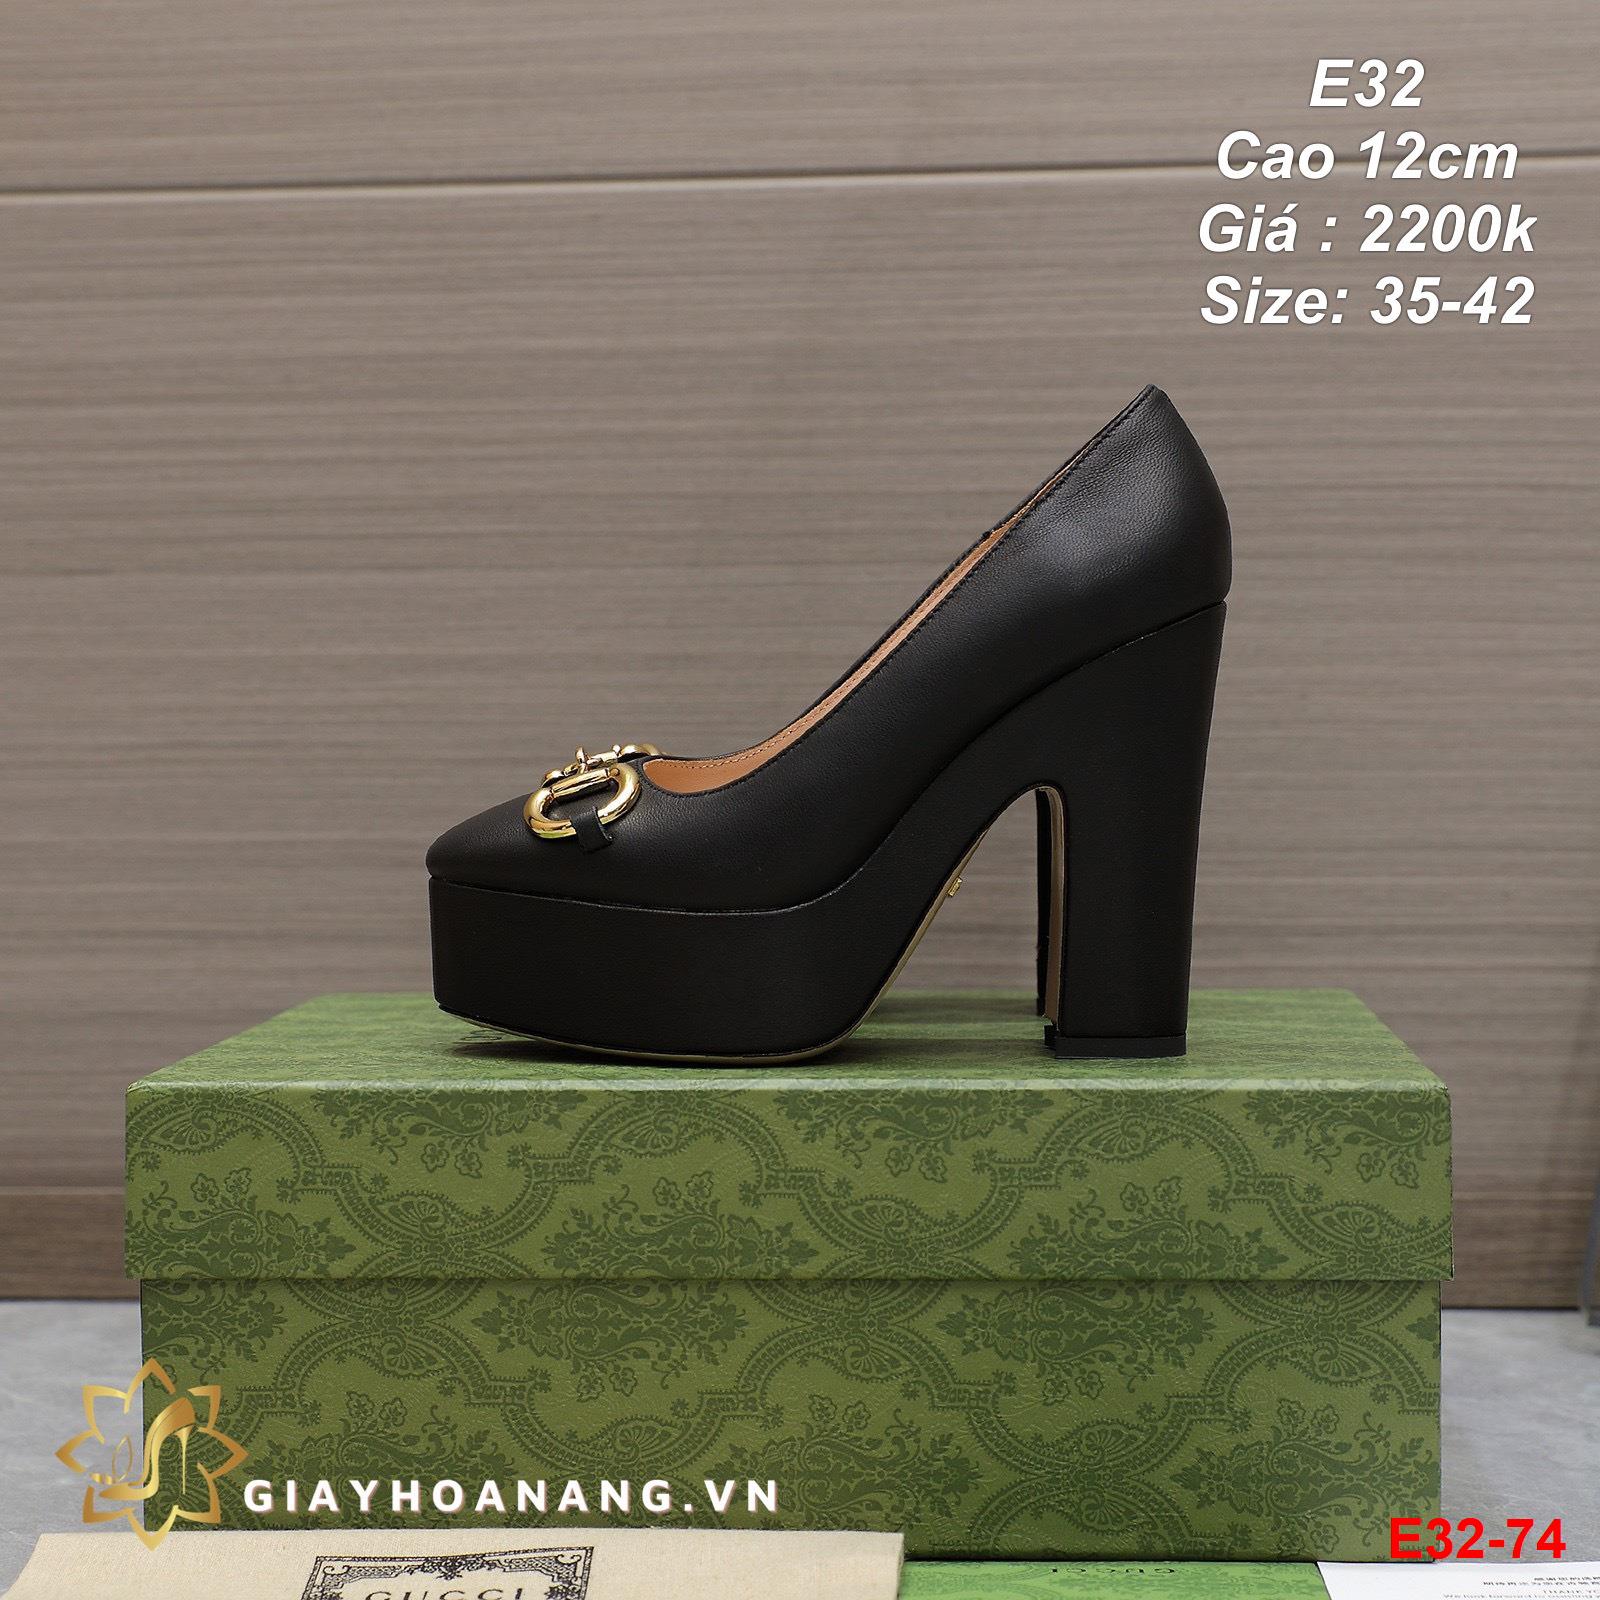 E32-74 Gucci giày cao 12cm siêu cấp